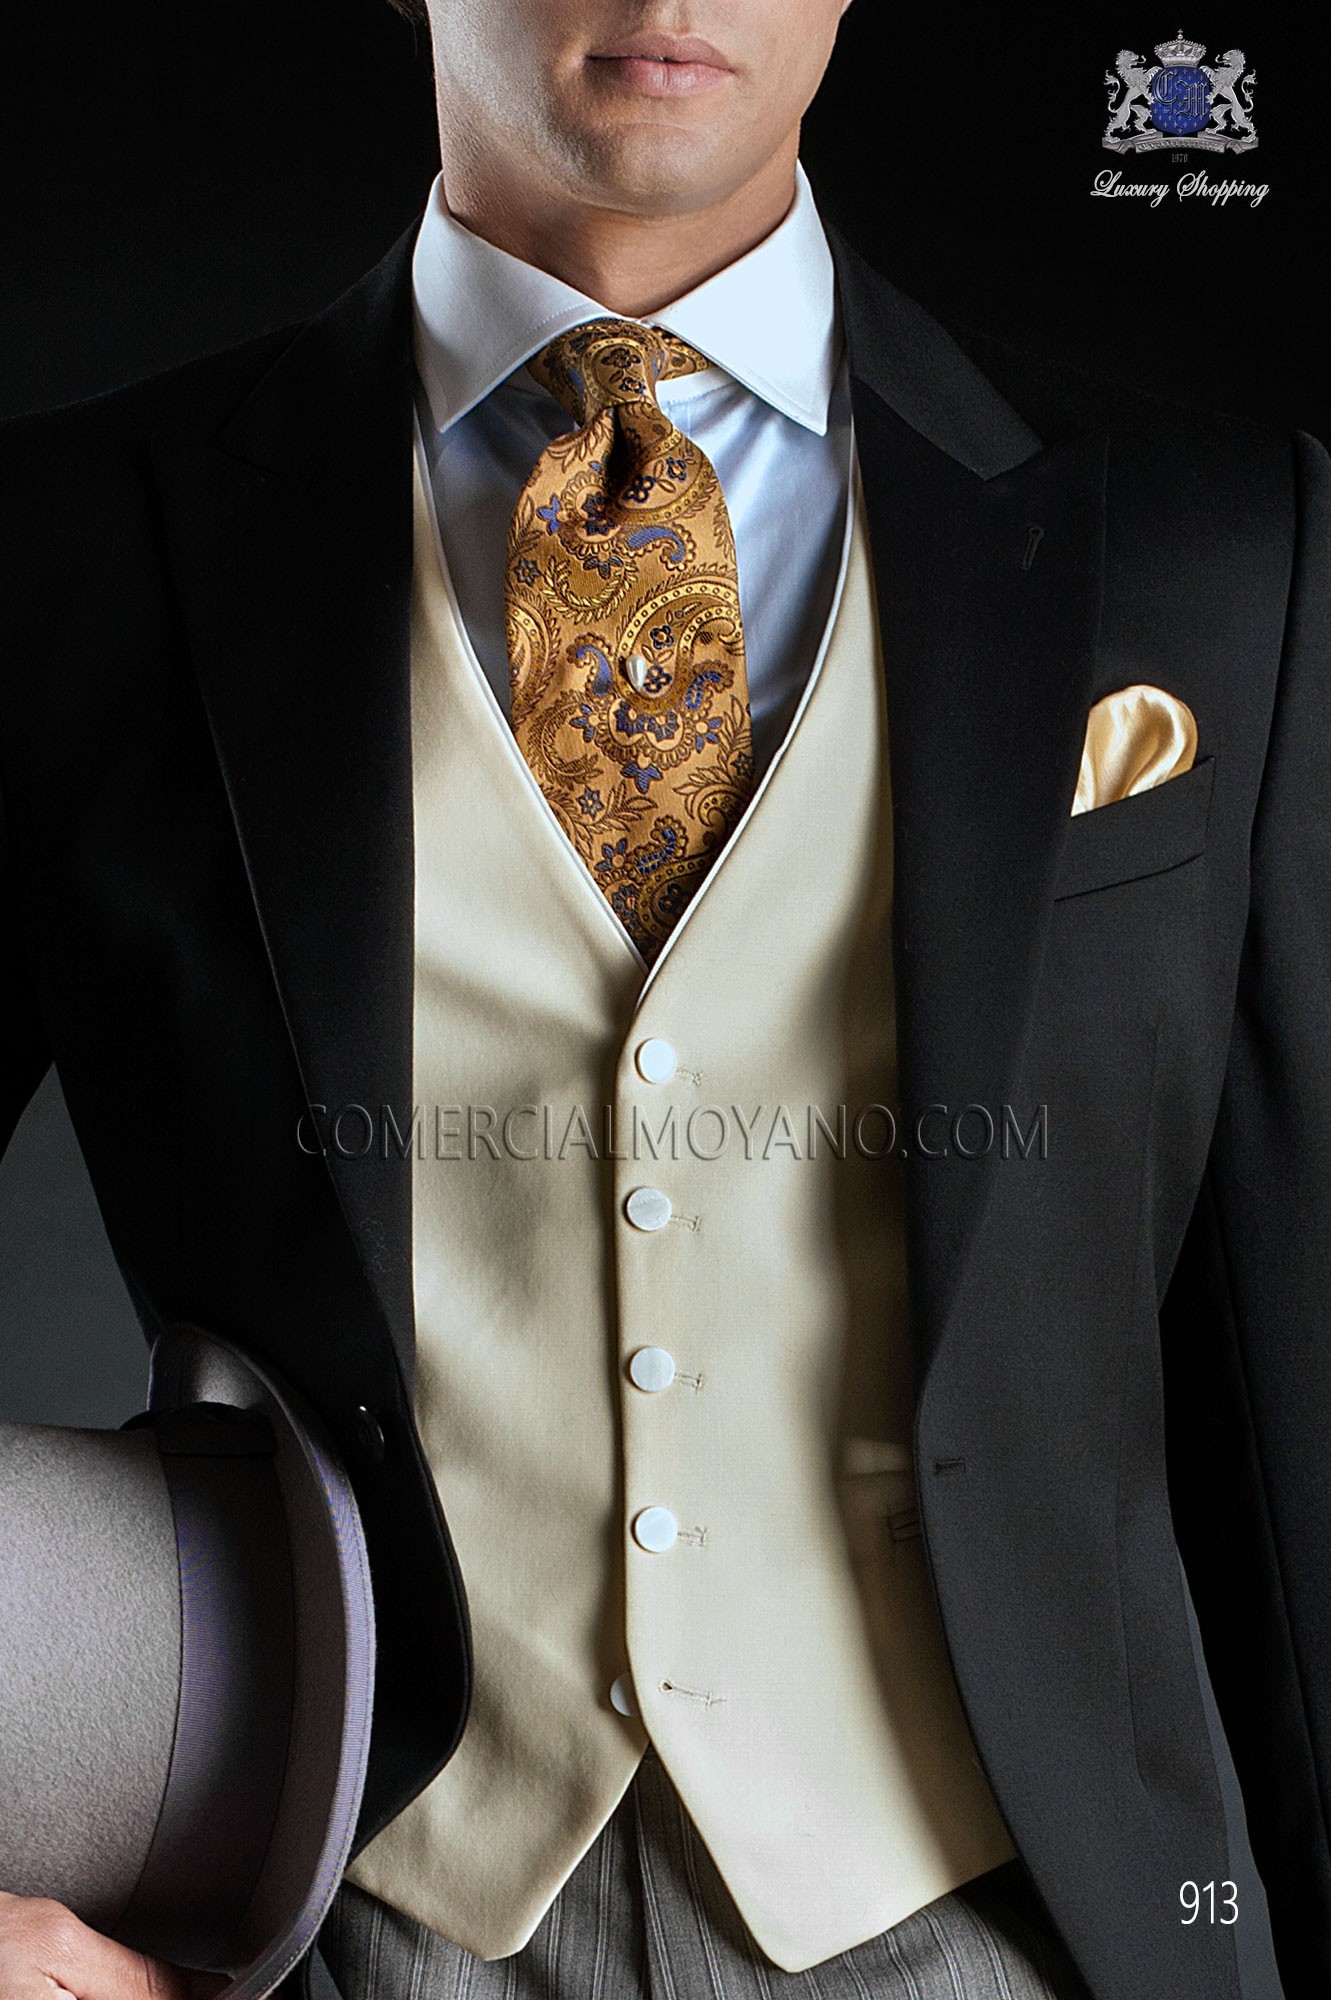 Traje Gentleman de novio negro modelo: 913 Mario Moyano colección Gentleman